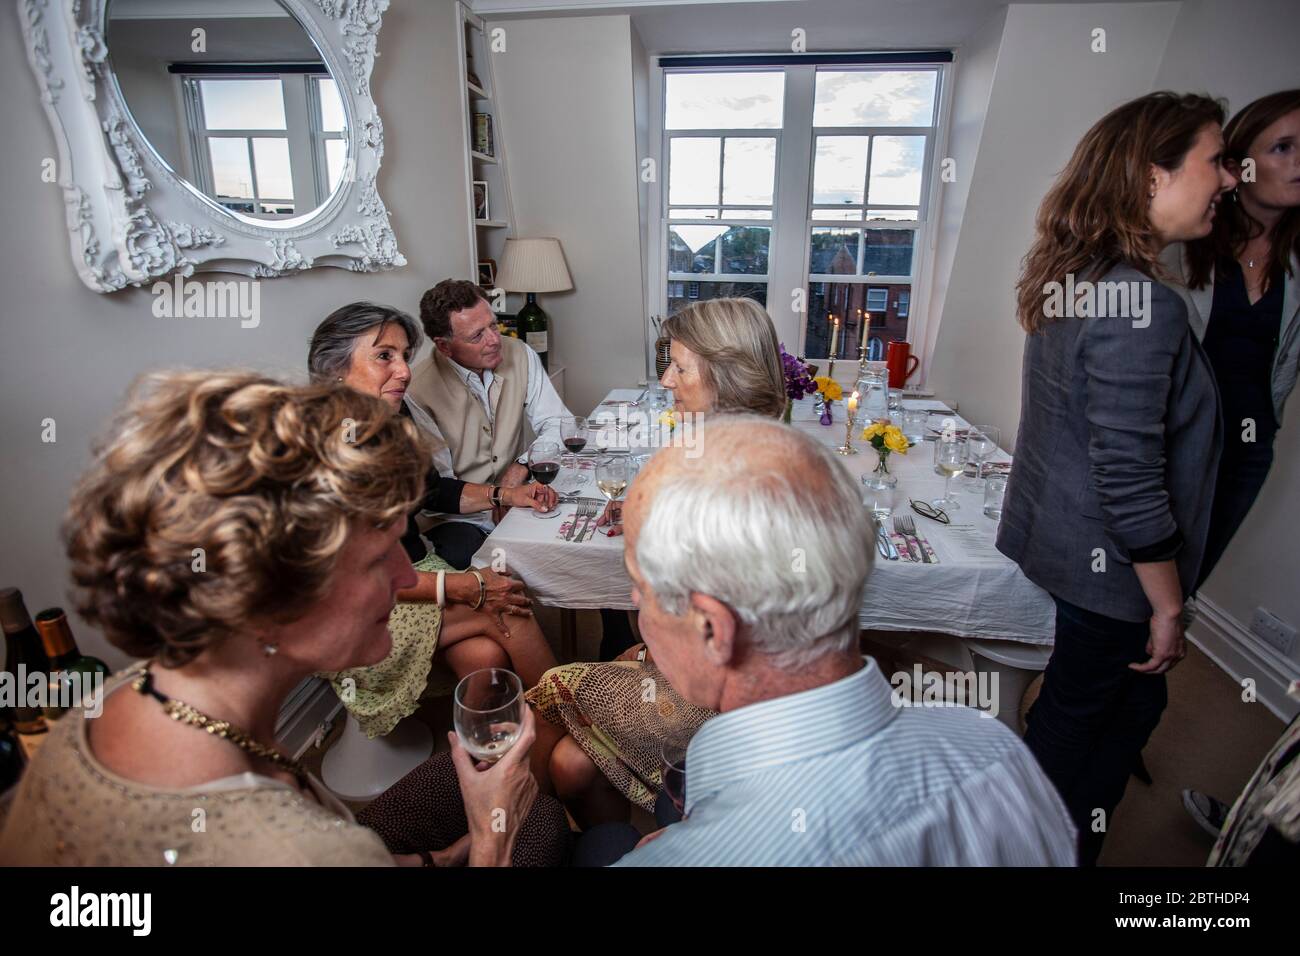 La gente se reúne alrededor de una mesa de cena en un apartamento de Londres para tomar una copa durante una cena, Londres, Inglaterra, Reino Unido Foto de stock